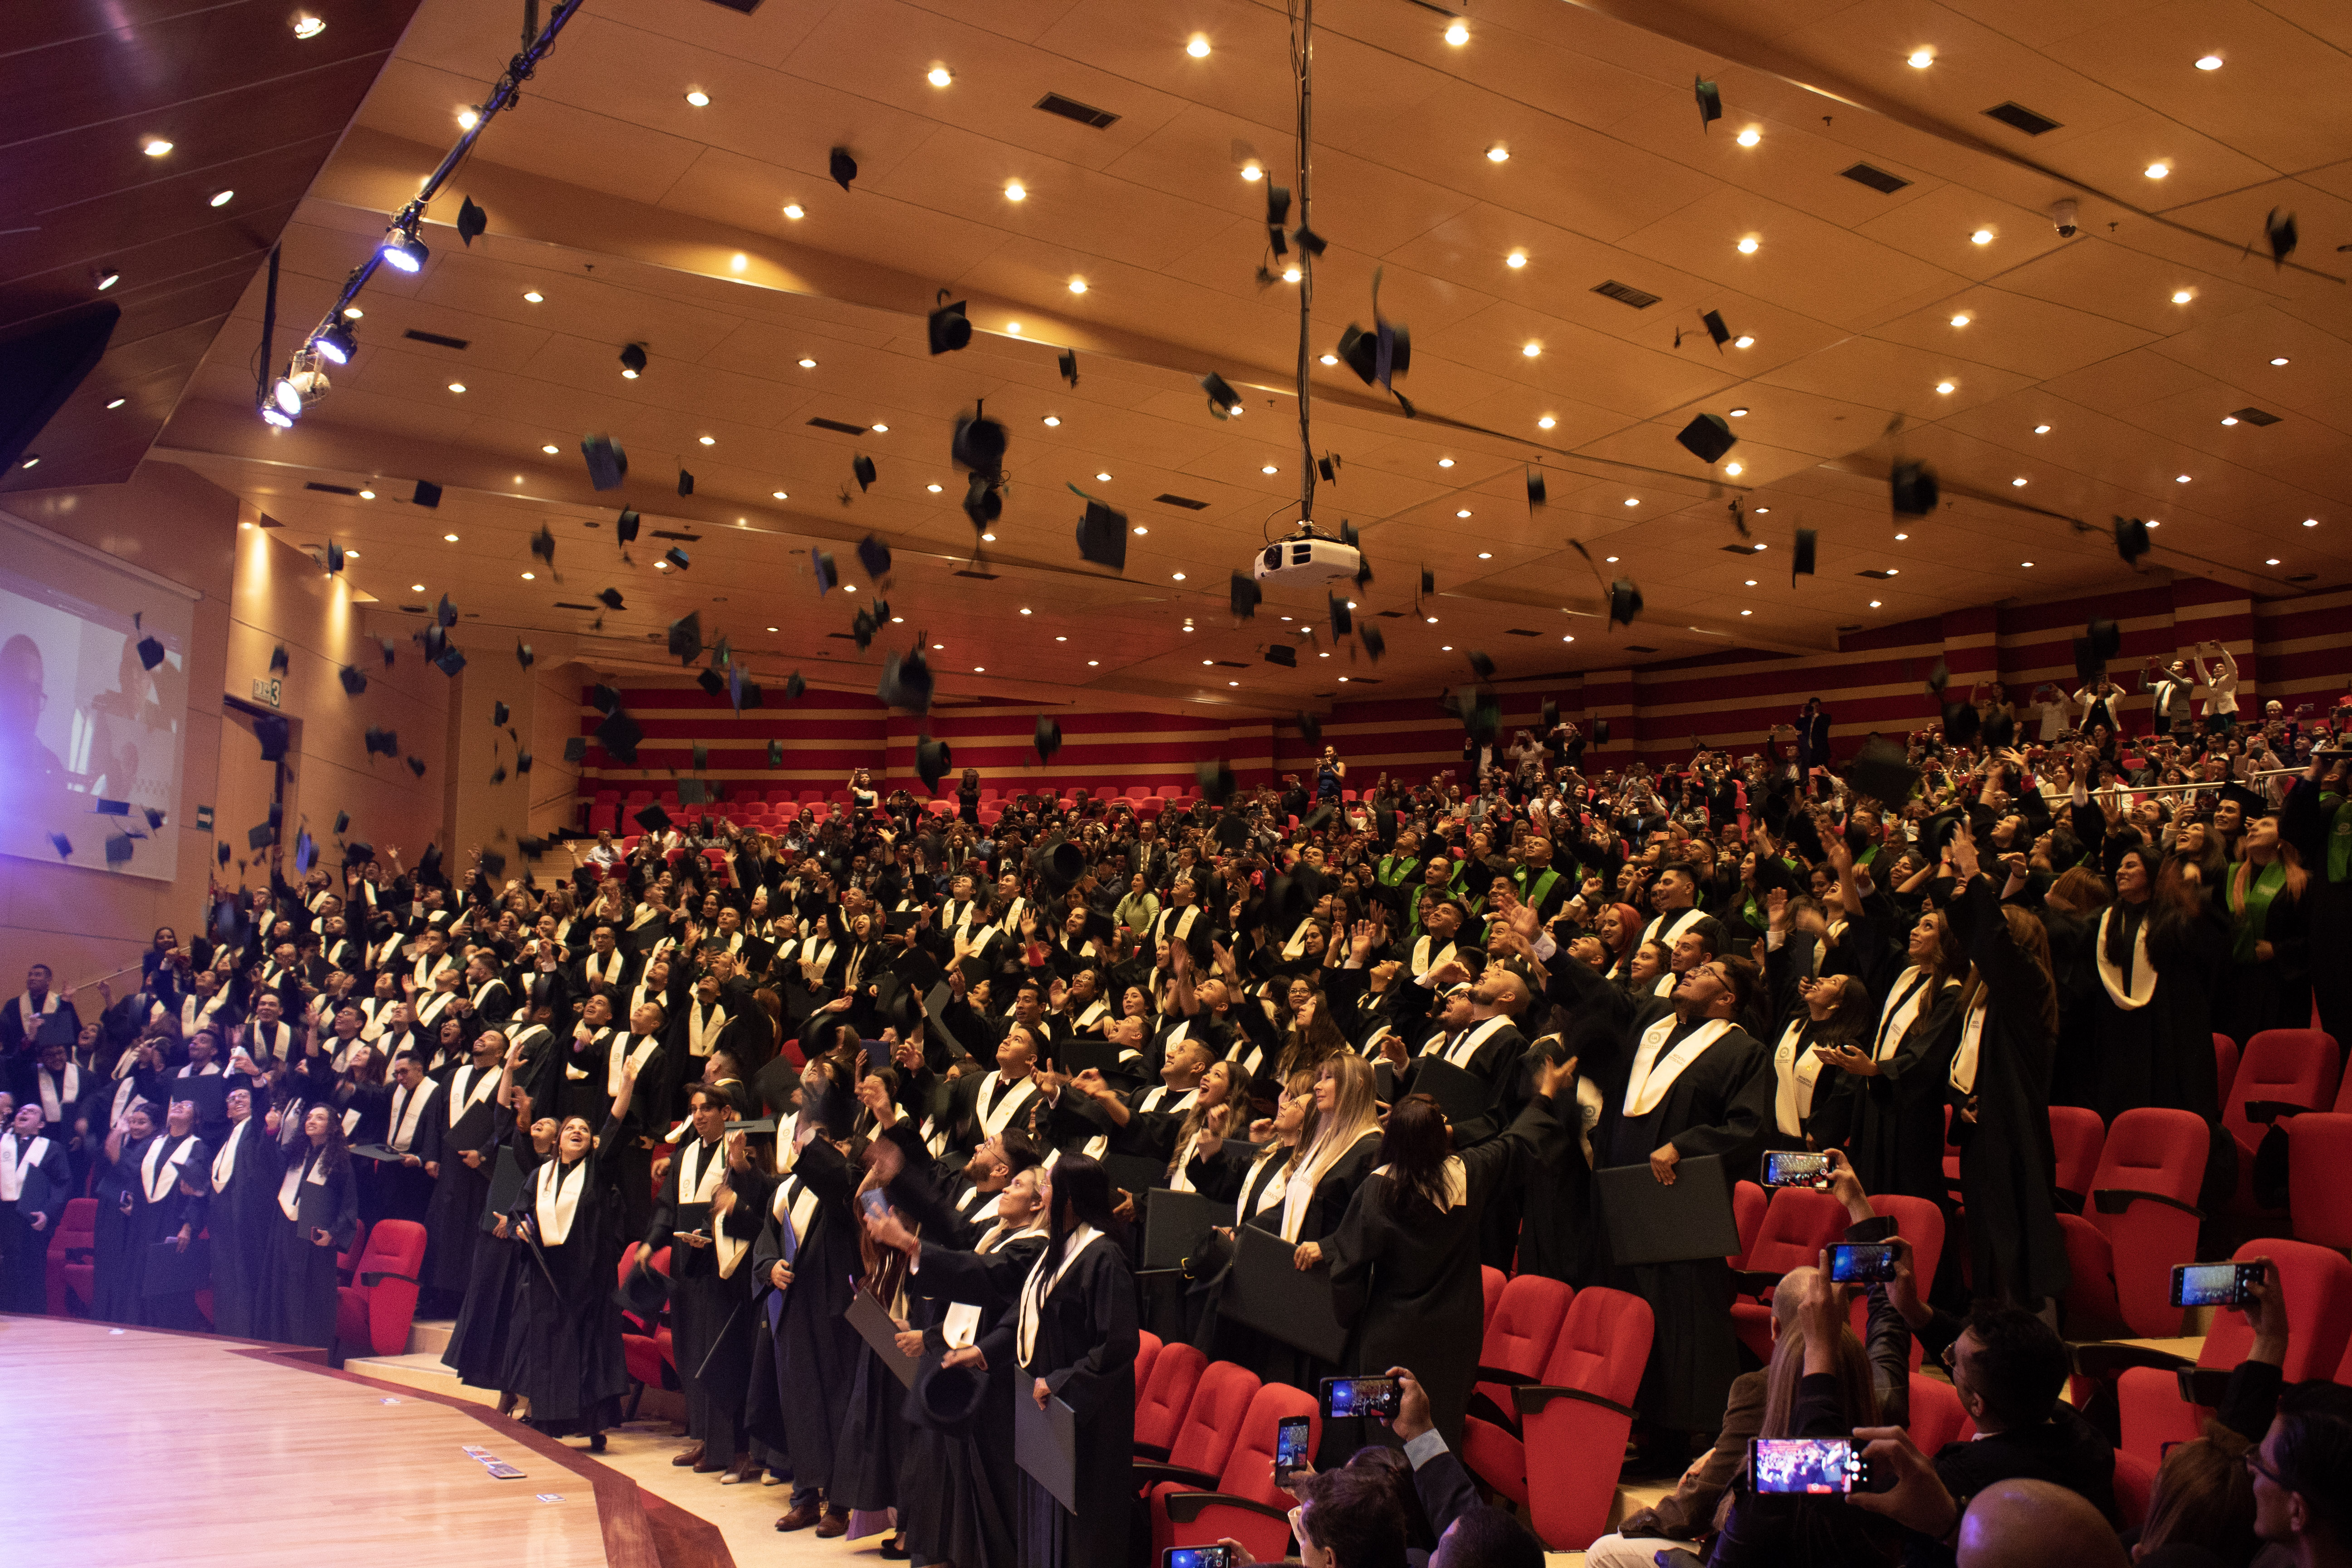 ¡¡¡Felicitaciones a los 231 graduados!!! 185 de pregrado y 46 de posgrado